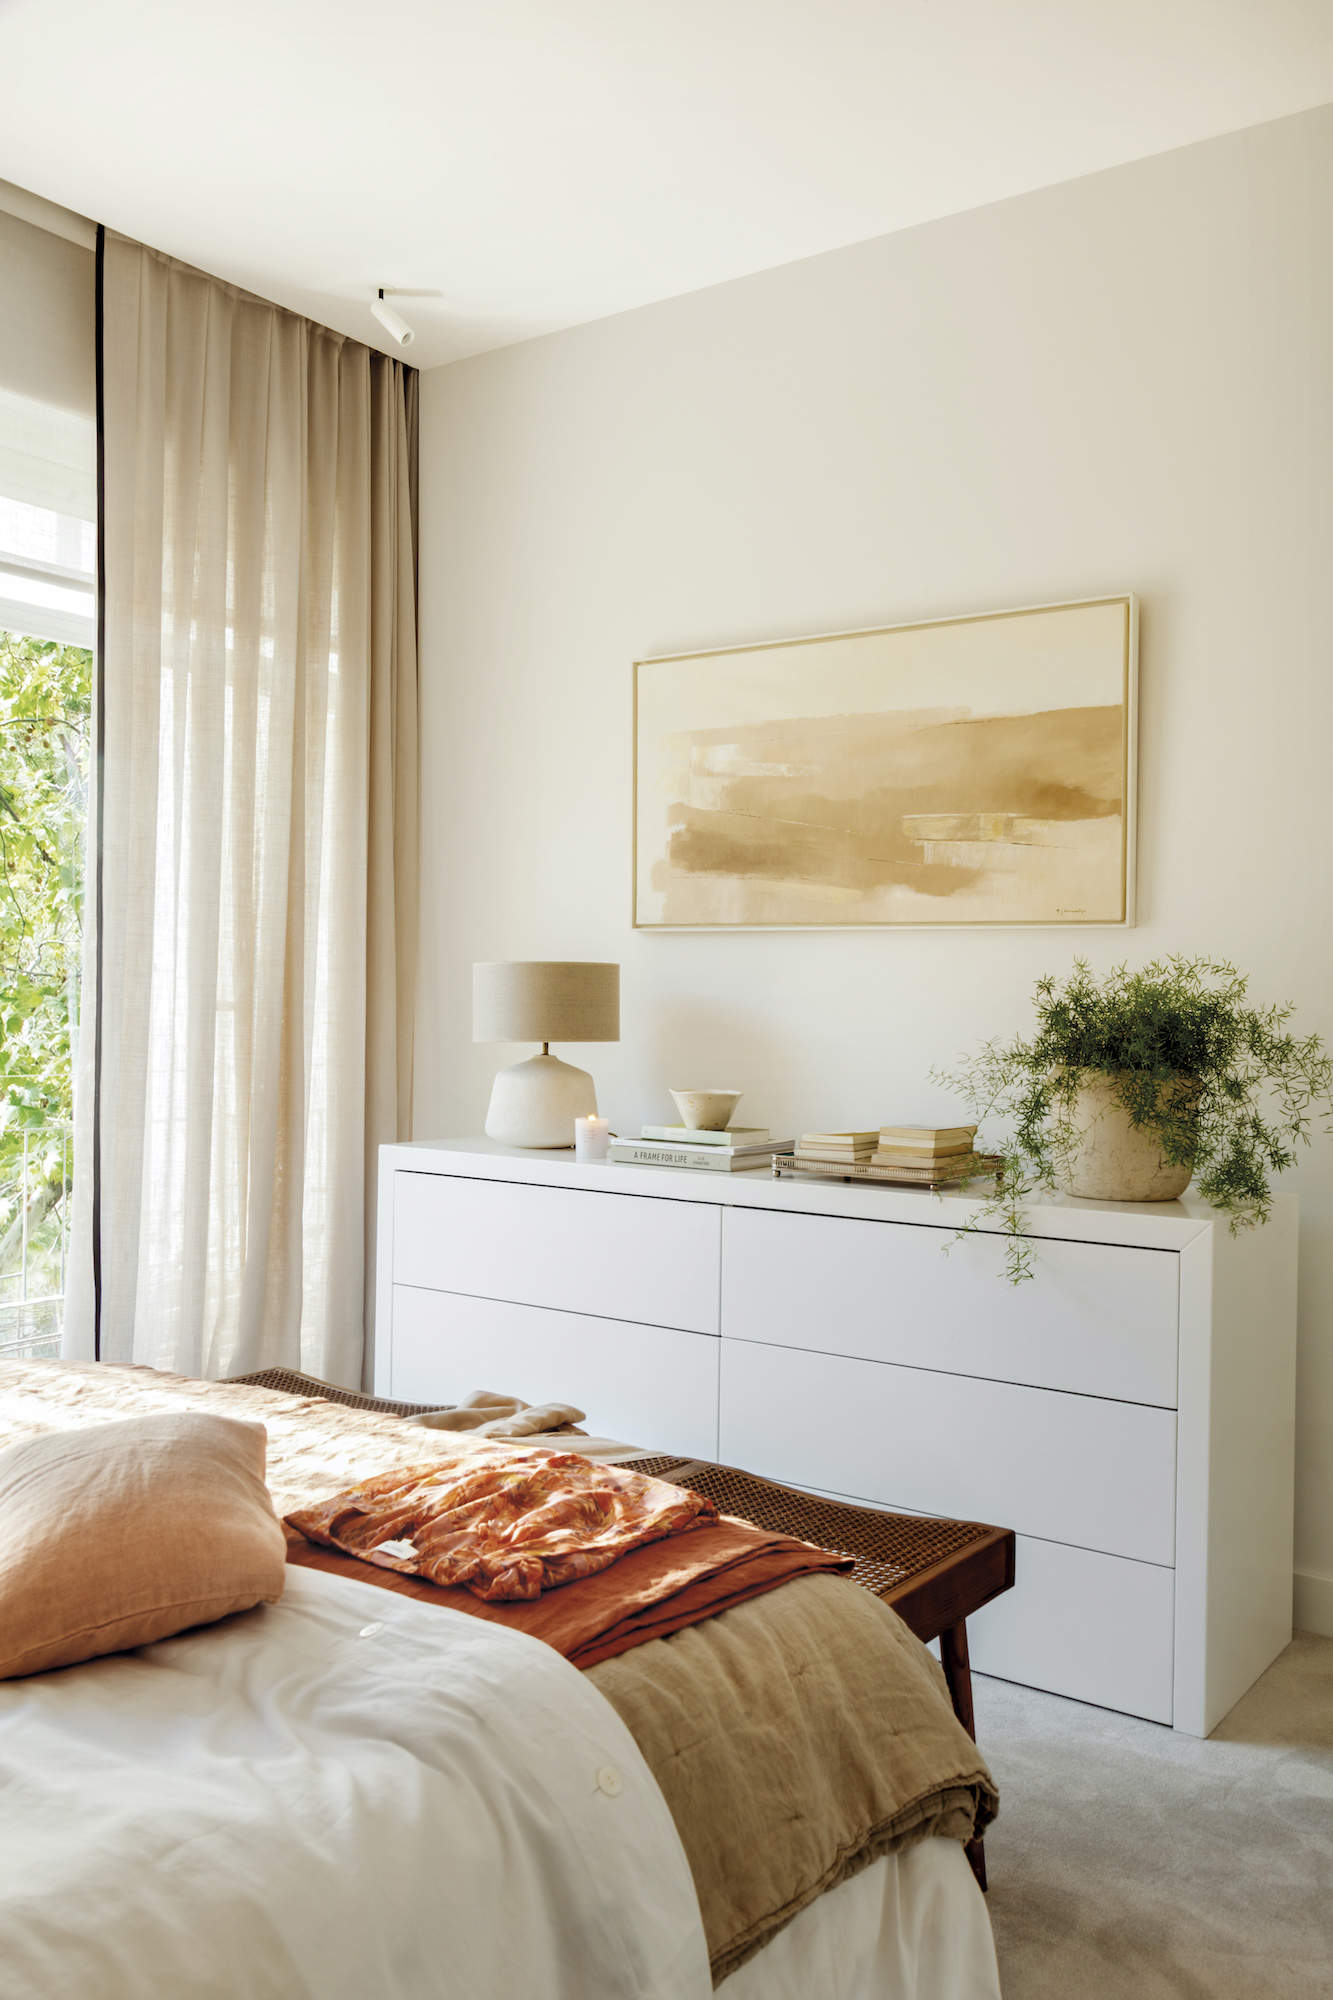 Dormitorio con cómoda blanca y cuadro en la pared frente a la cama.